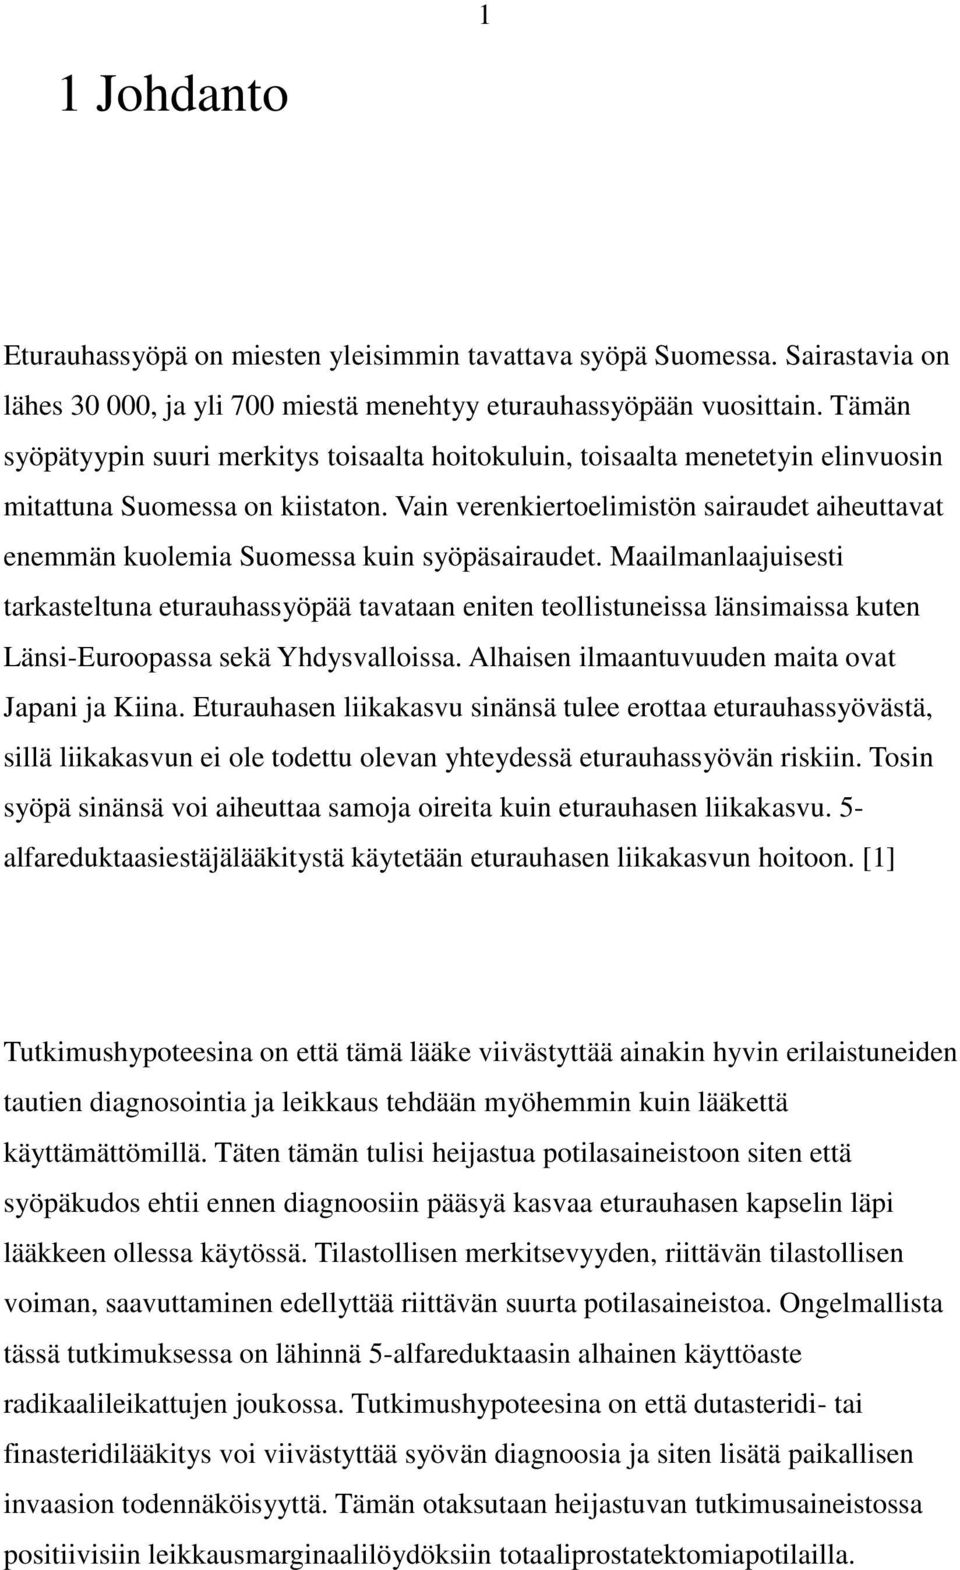 Vain verenkiertoelimistön sairaudet aiheuttavat enemmän kuolemia Suomessa kuin syöpäsairaudet.